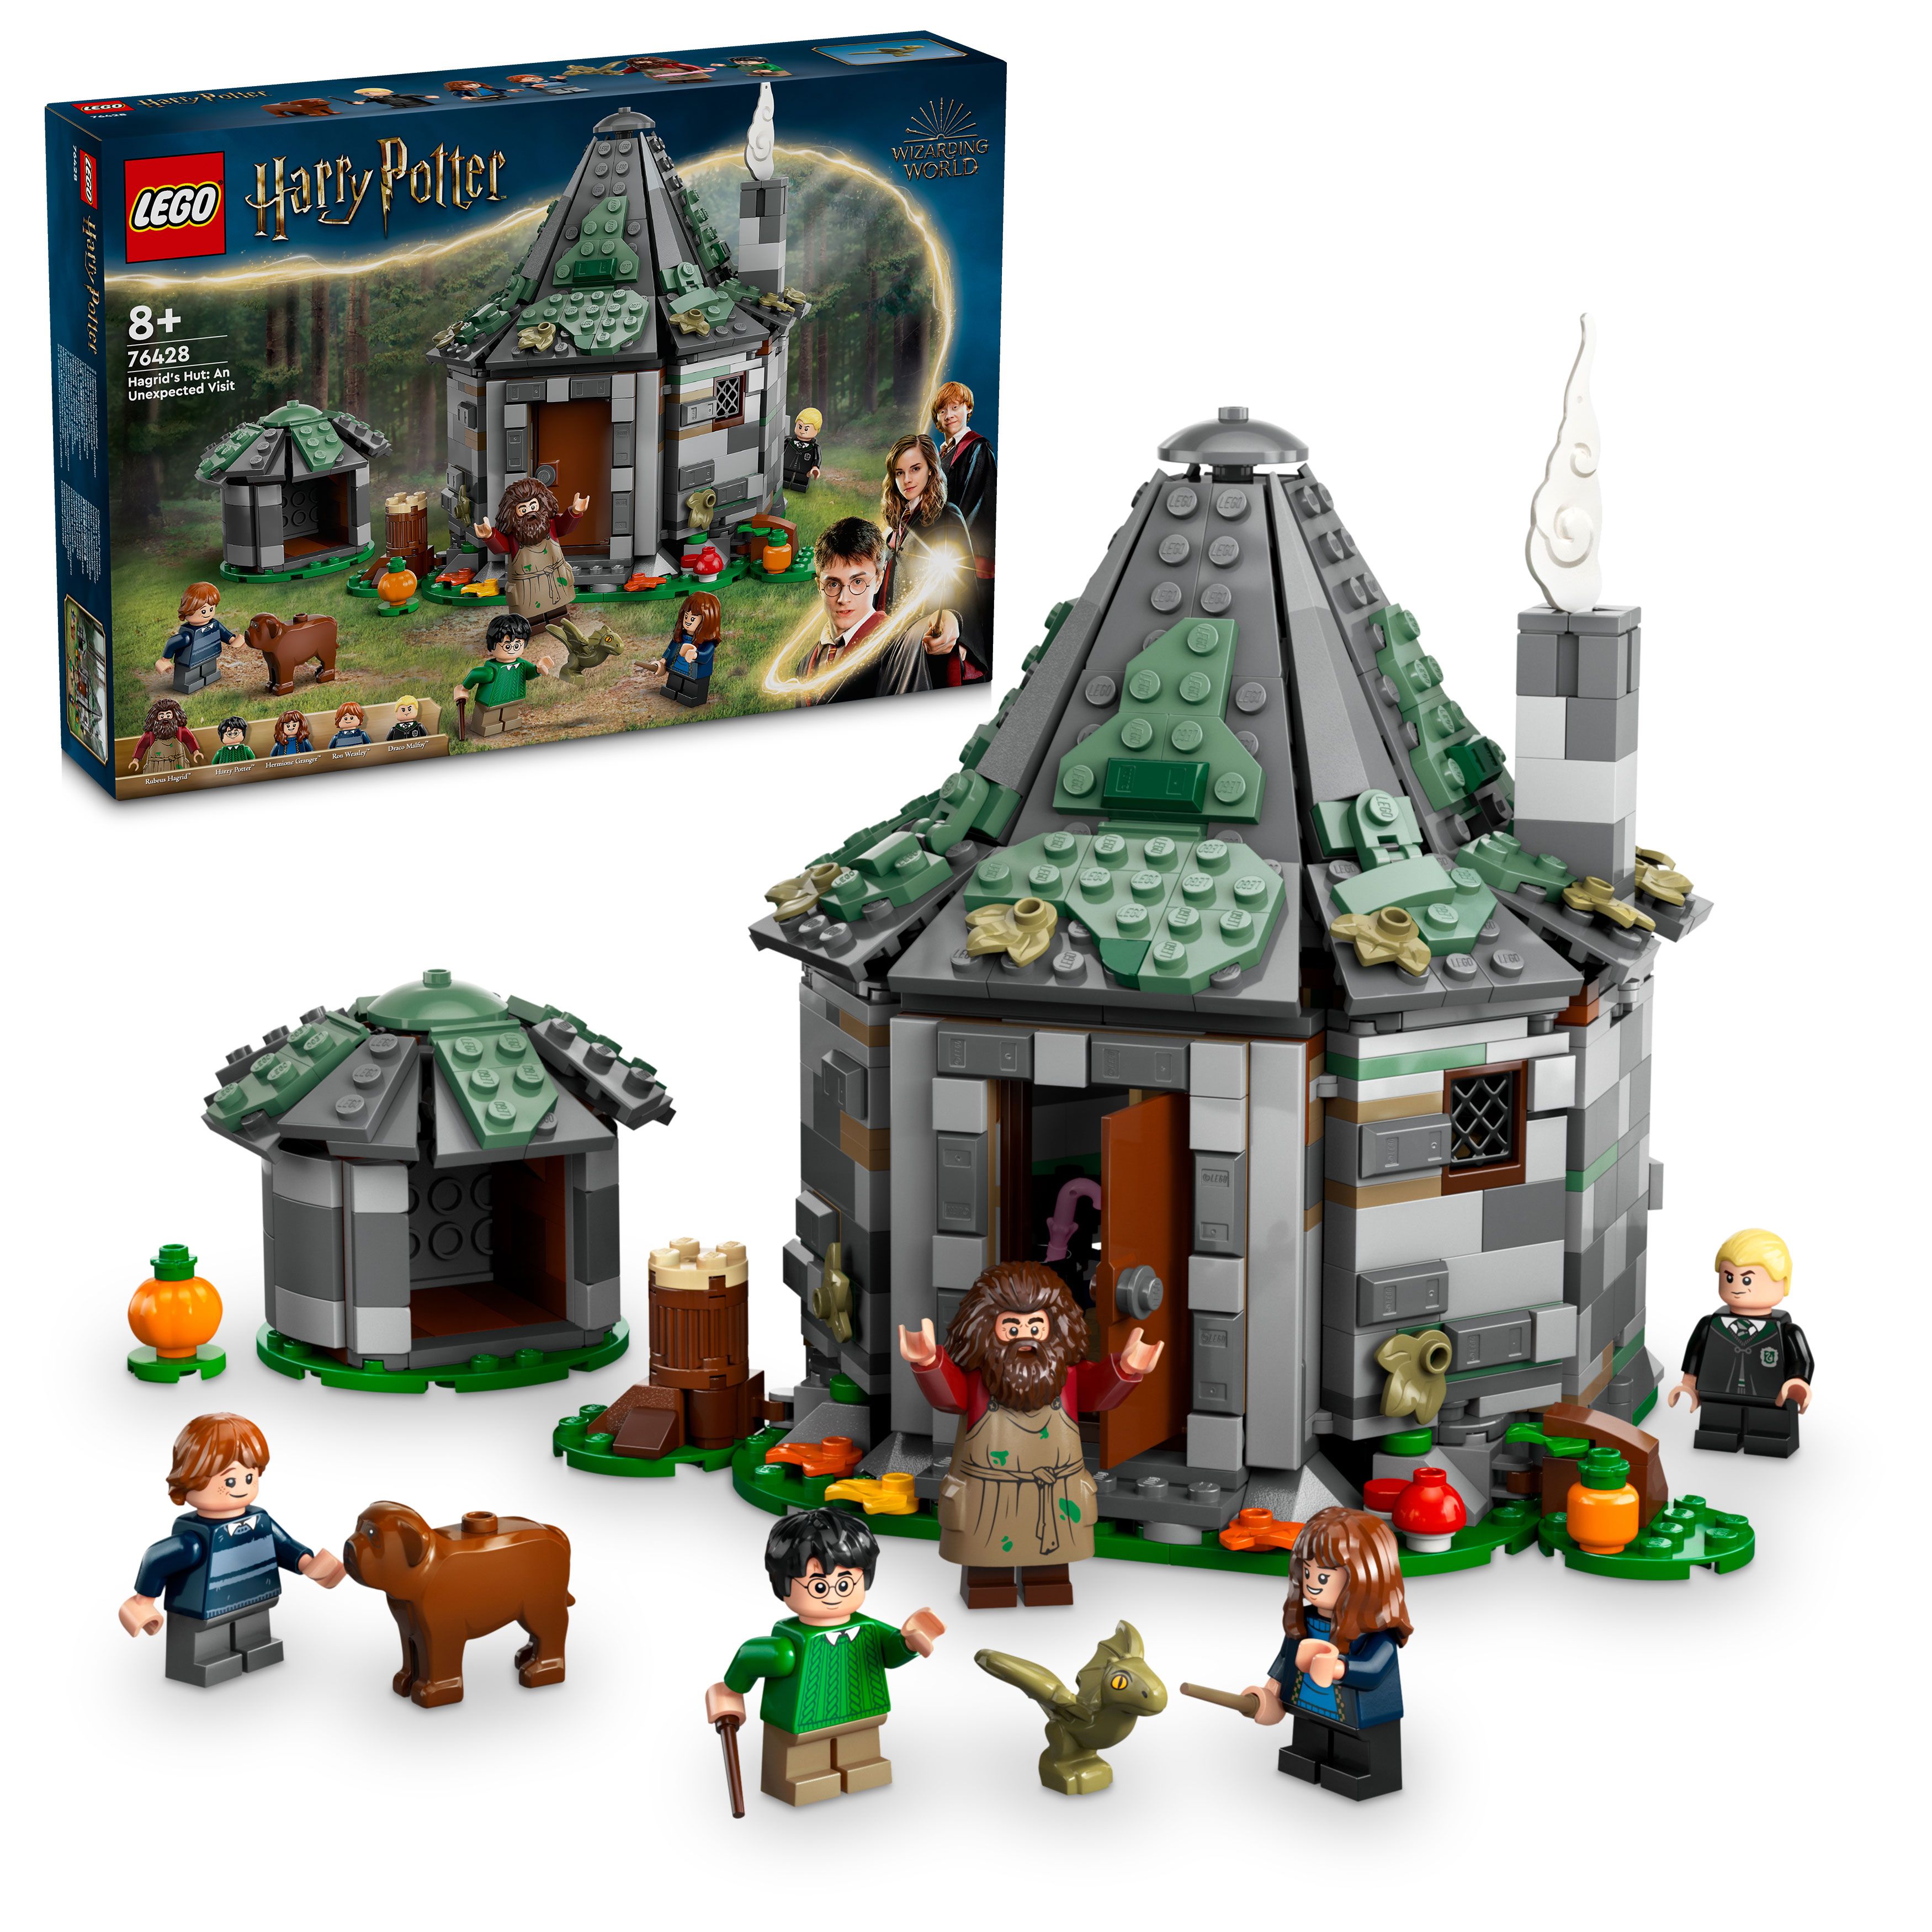 LEGO Harry Potter - Gygrids hytte: Et uventet besøk (76428) - Leker